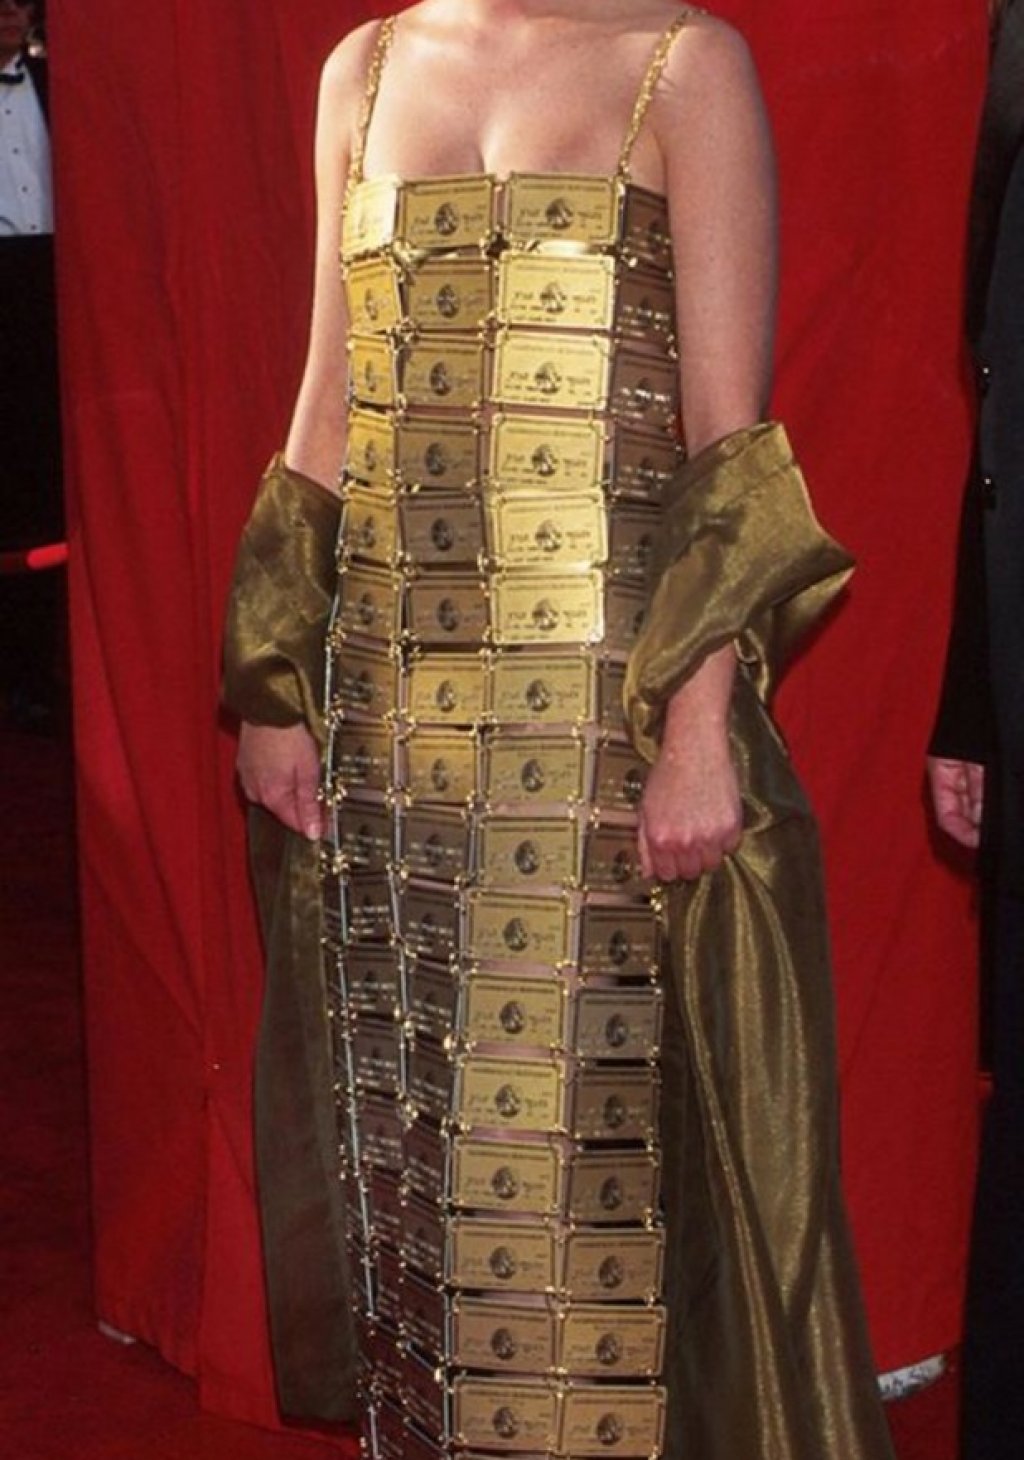 Лизи Гаринър спечели "Оскар" през 1995-та година за най-добър дизайн на костюми. За да си вземе наградата, тя се появи облечена в тази рокля (също нейно дело), съшита от 254 златни кредитни карти American Express